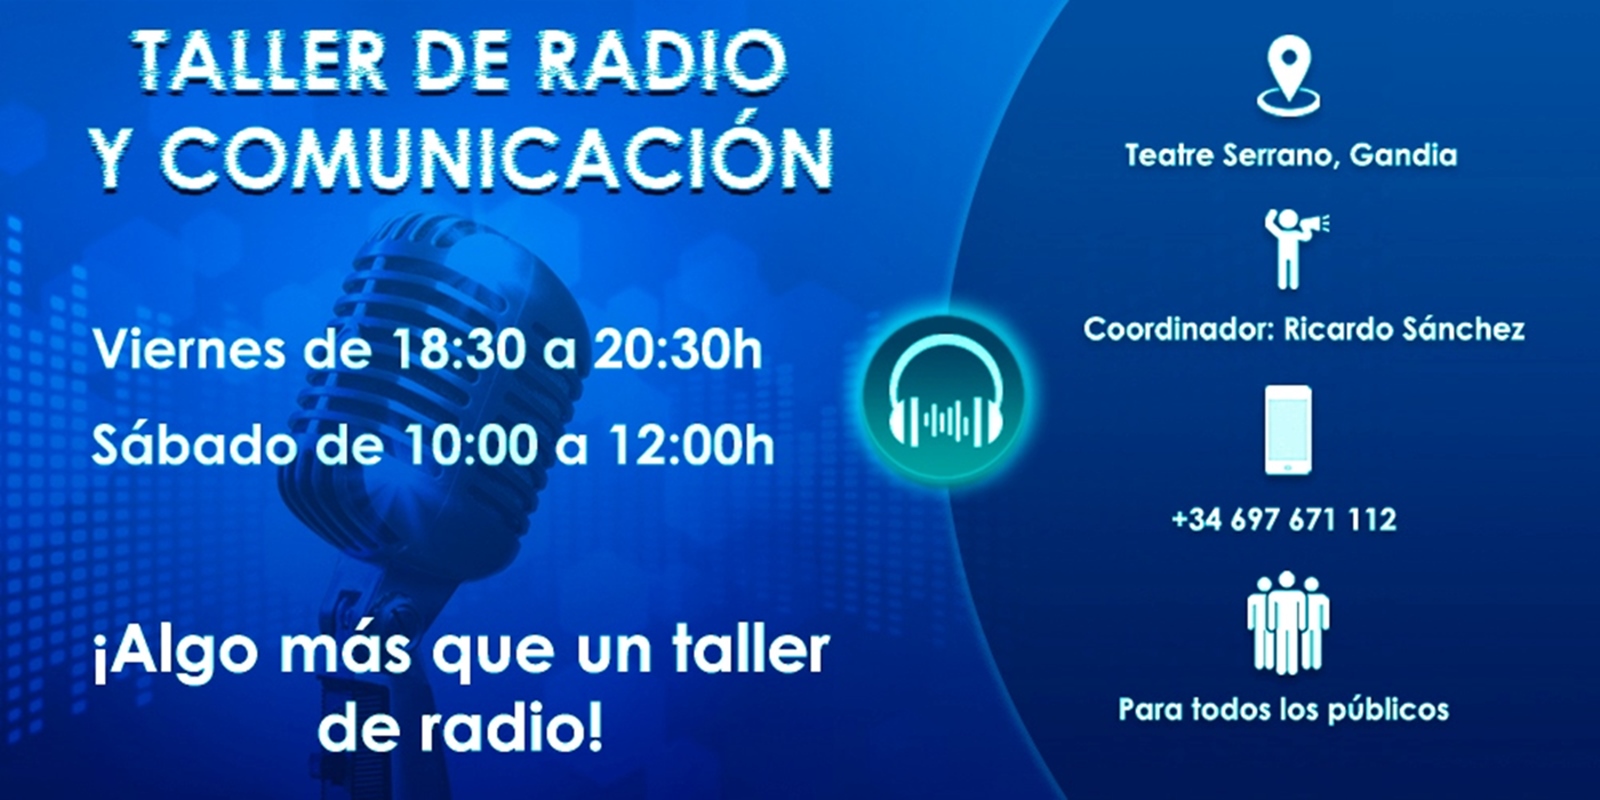 1600px x 800px - Taller de Radio y ComunicaciÃ³n en el Teatre Serrano de Gandia | Safor Press